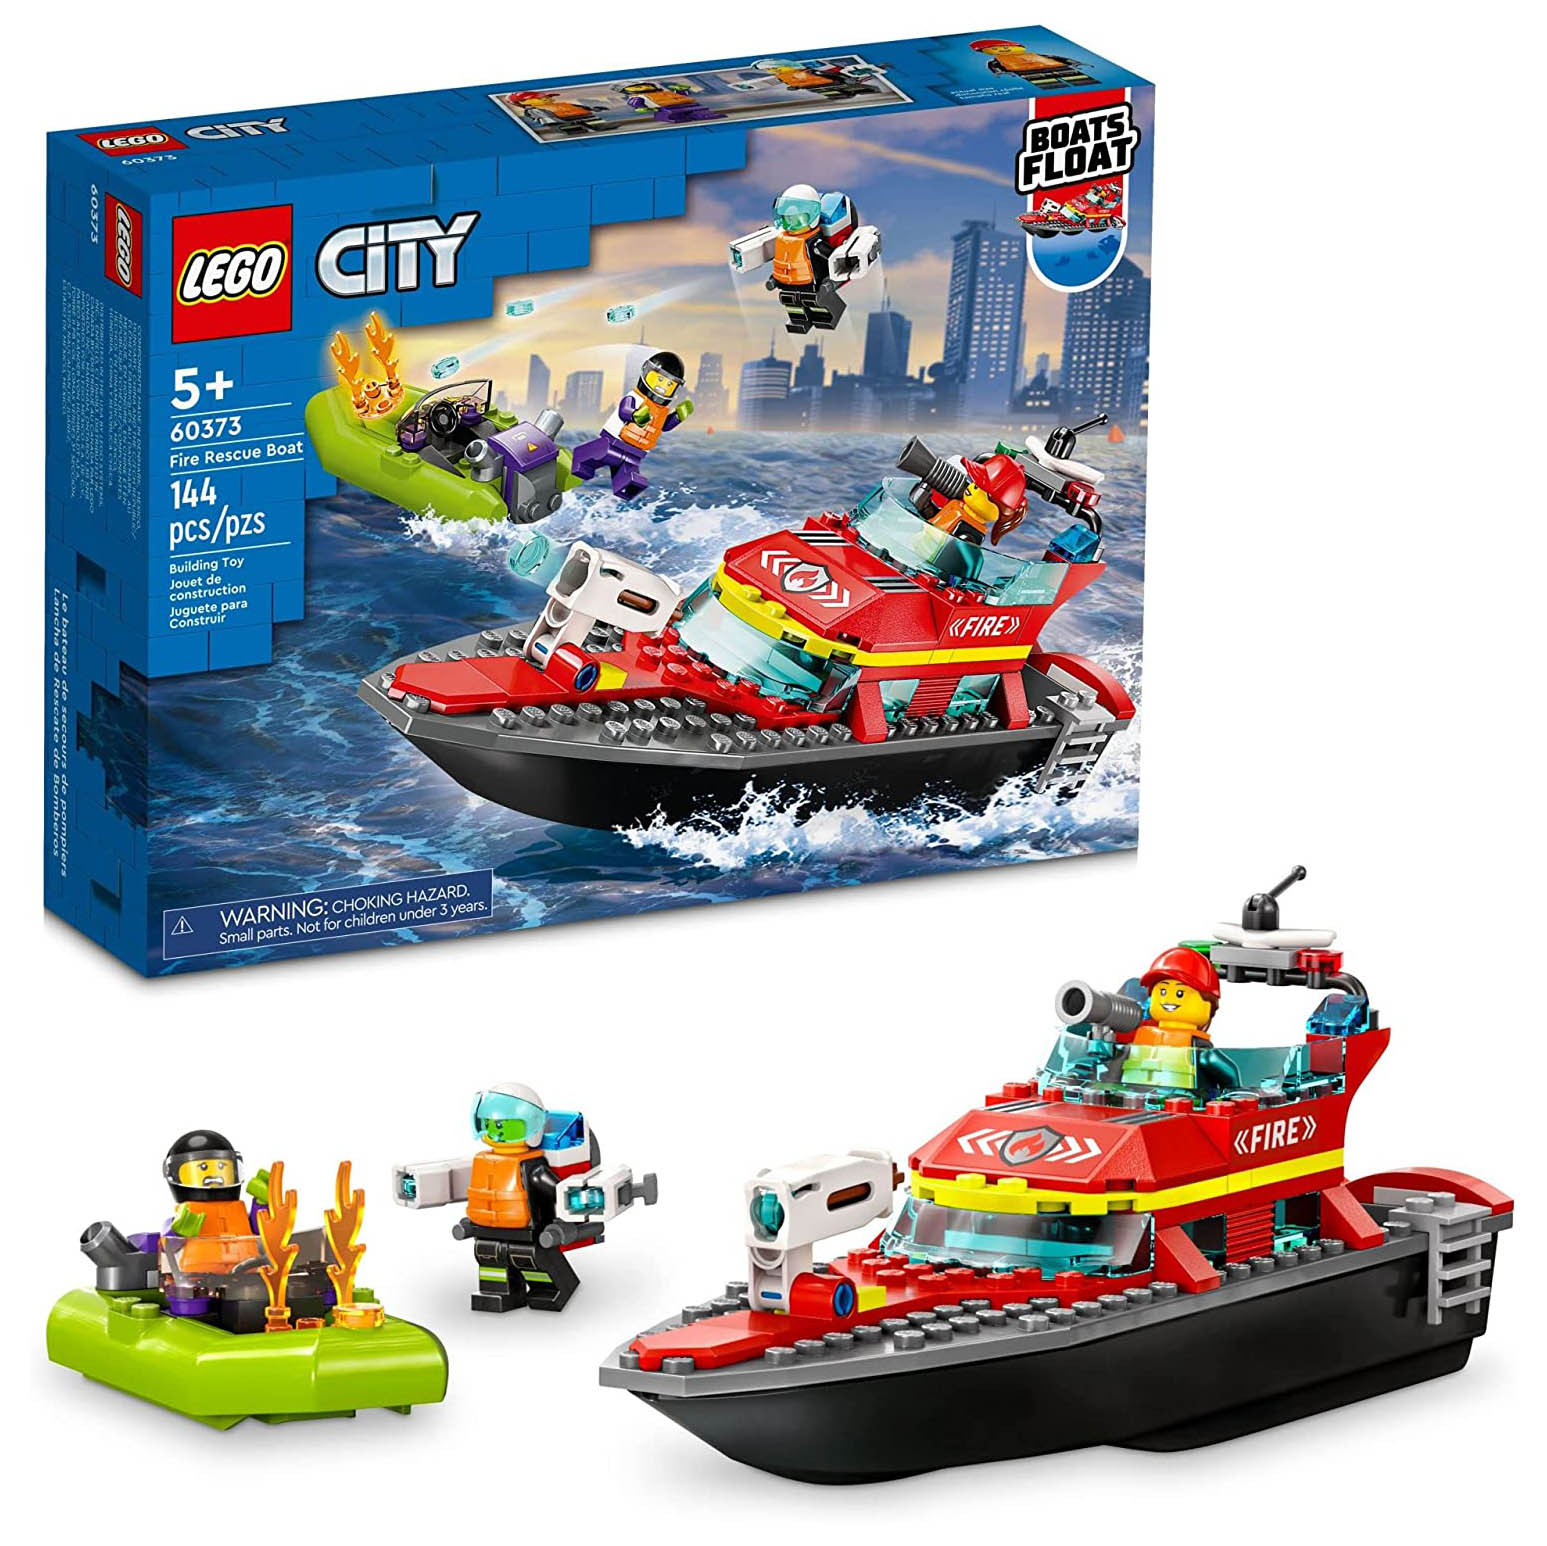 Конструктор LEGO City Пожарная спасательная лодка, 144 детали, 60373 lego city городские приключения более 500 многоразовых наклеек